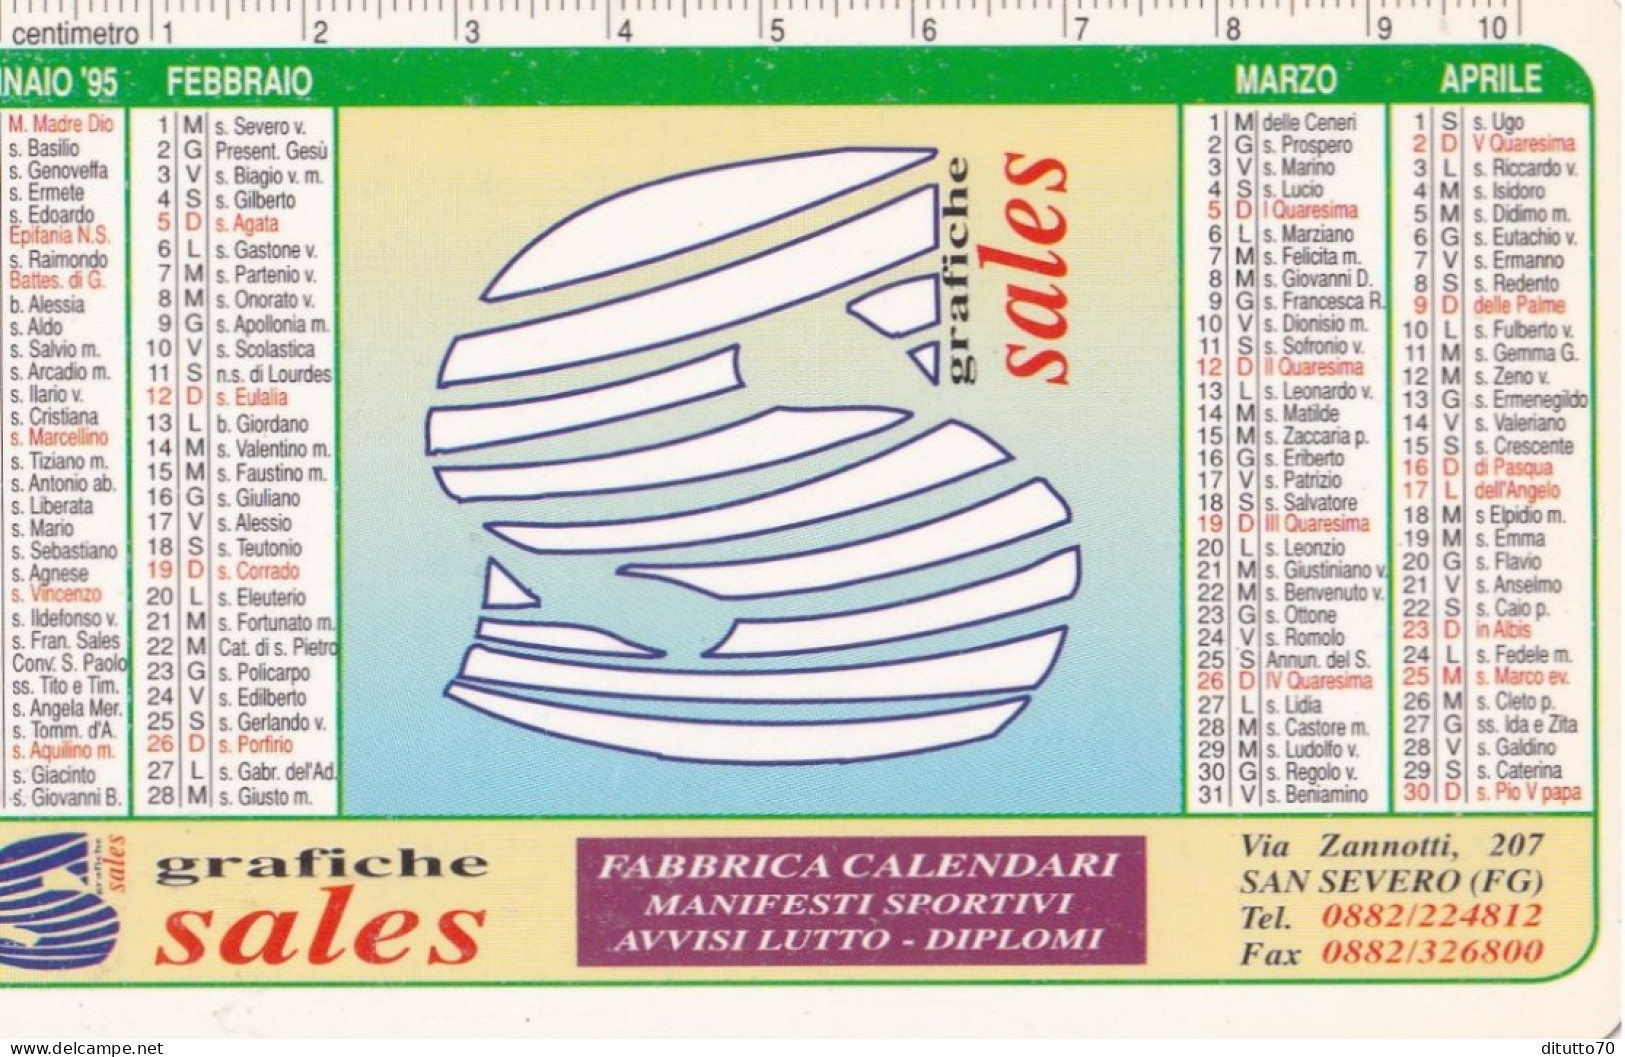 Calendarietto - Grafiche Sales - San Severo - Foggia - Anno 1995 - Small : 1991-00